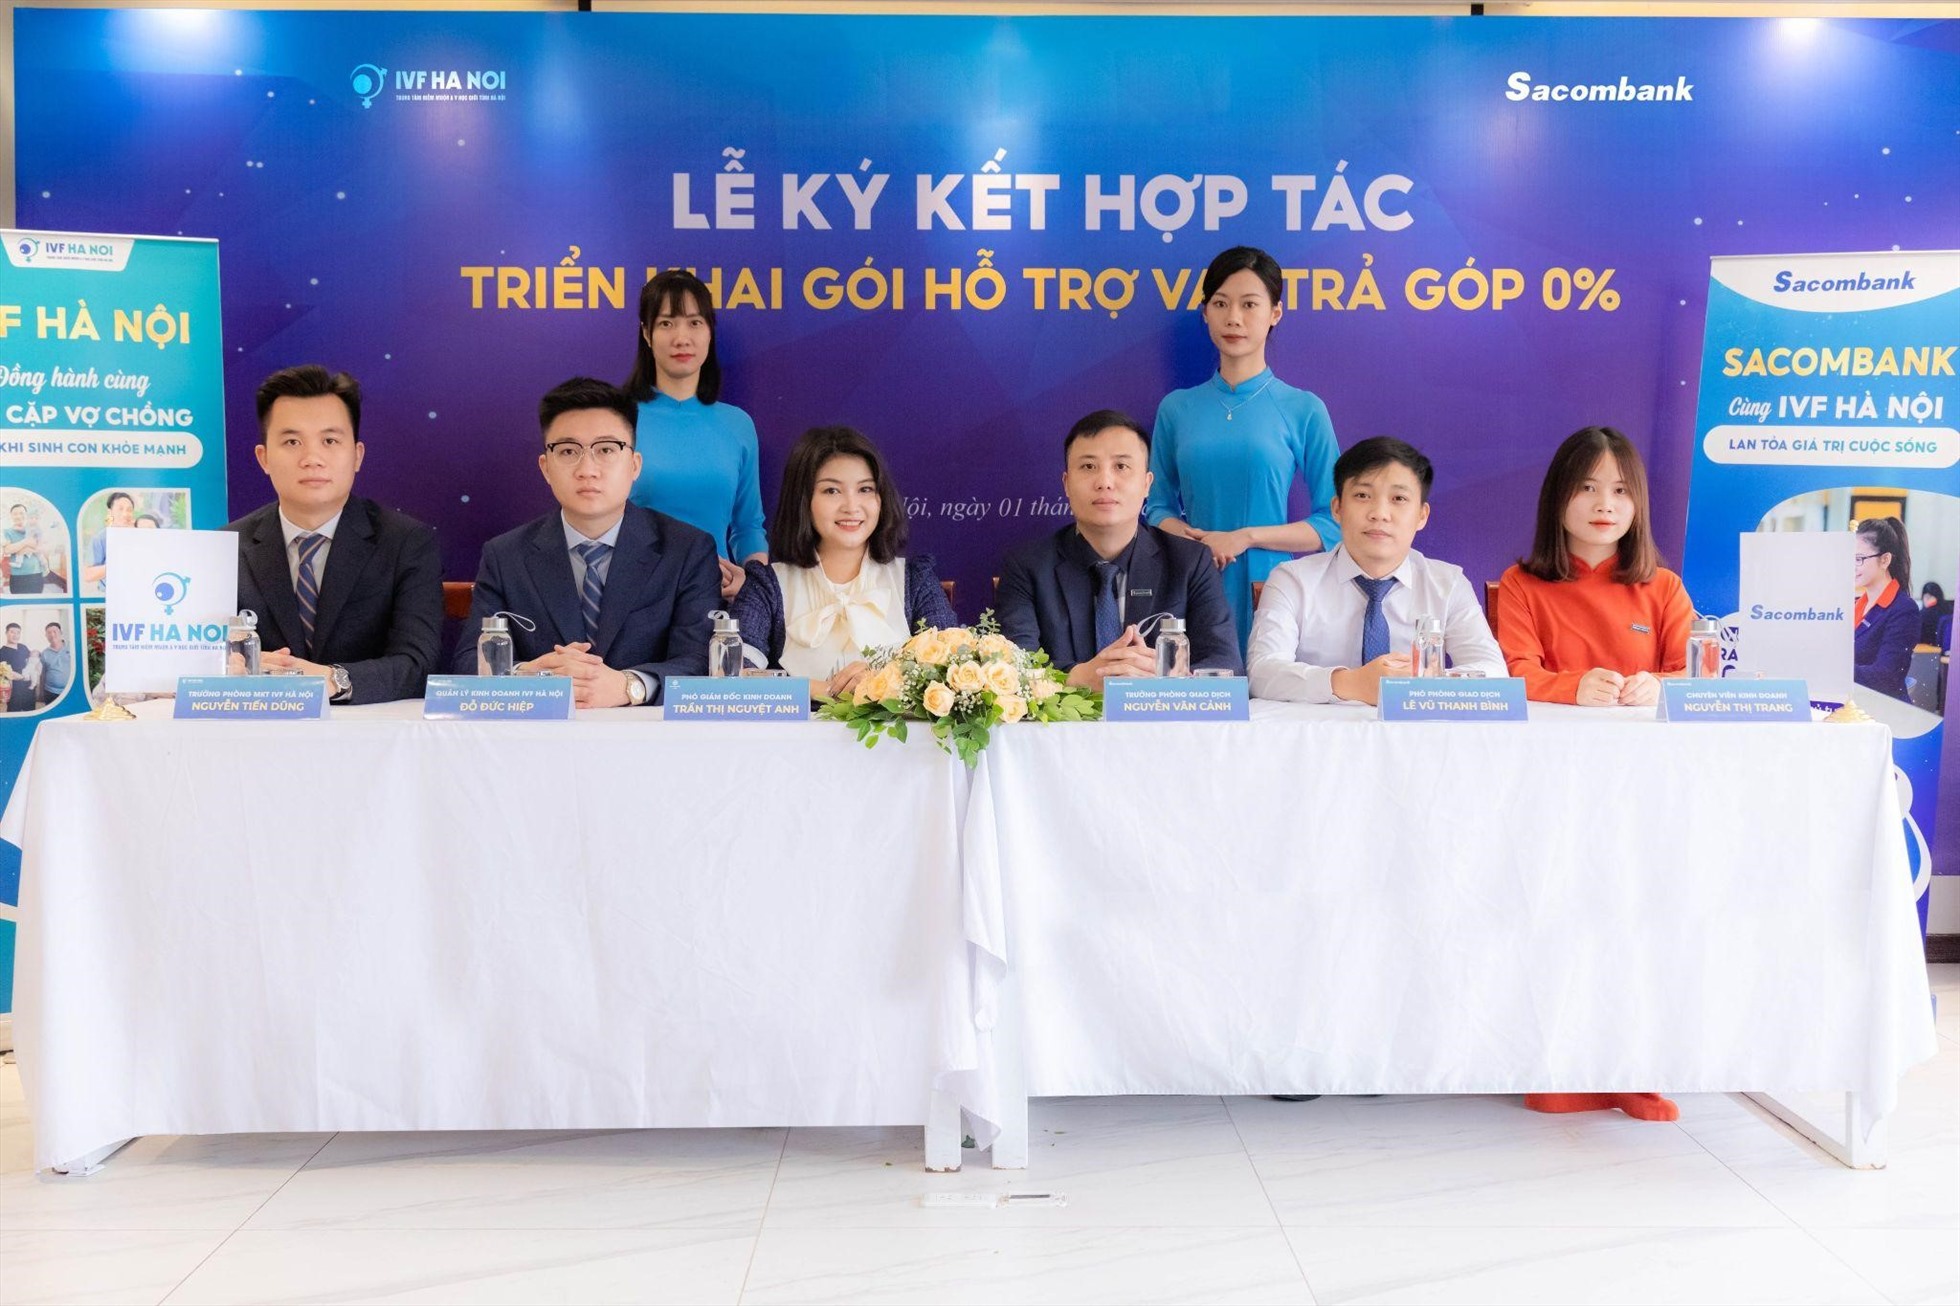 Toàn cảnh lễ ký kết hợp tác giữa Trung tâm IVF Hà Nội và Sacombank.